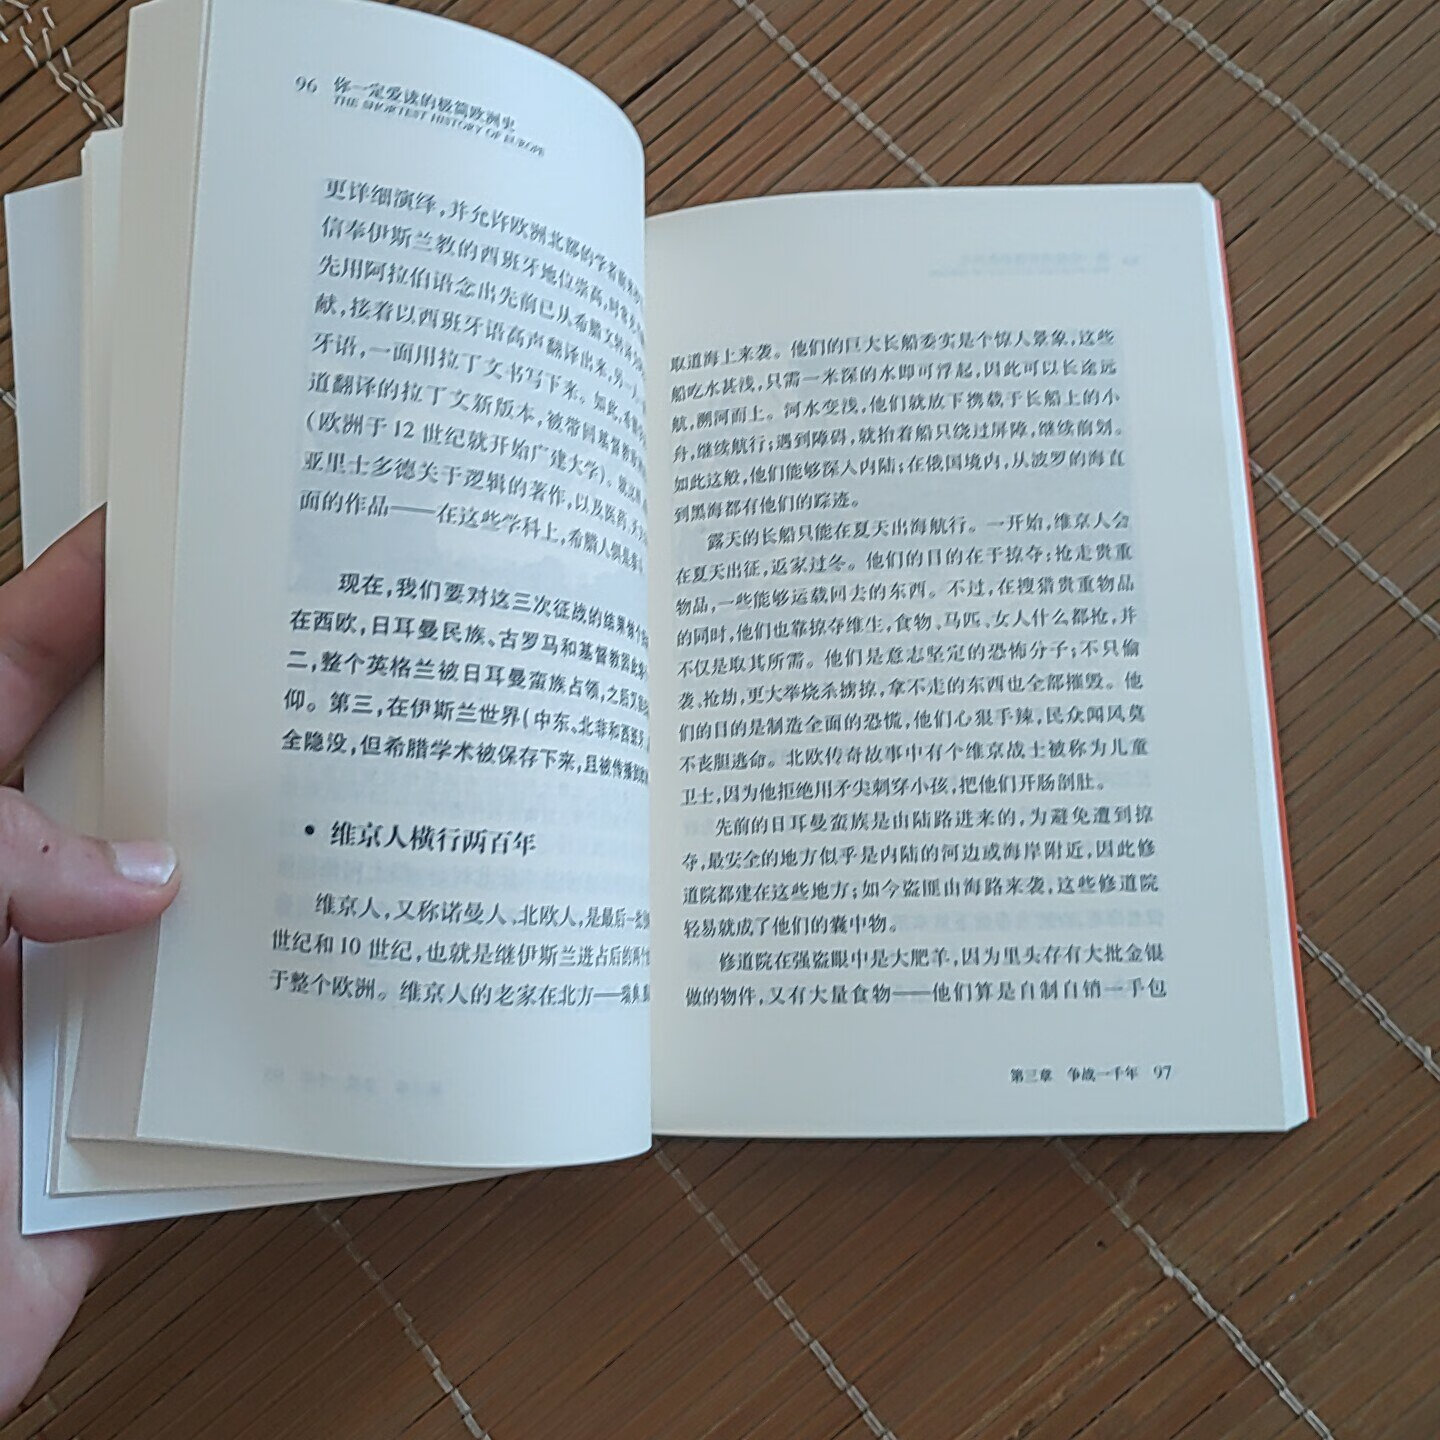 鲁迅，自不必说，中国现代文学史不可或缺的重要作家，同时也是伟大的革命家，作品值得每个中国人好好看看。书房必收藏的作品集。推荐